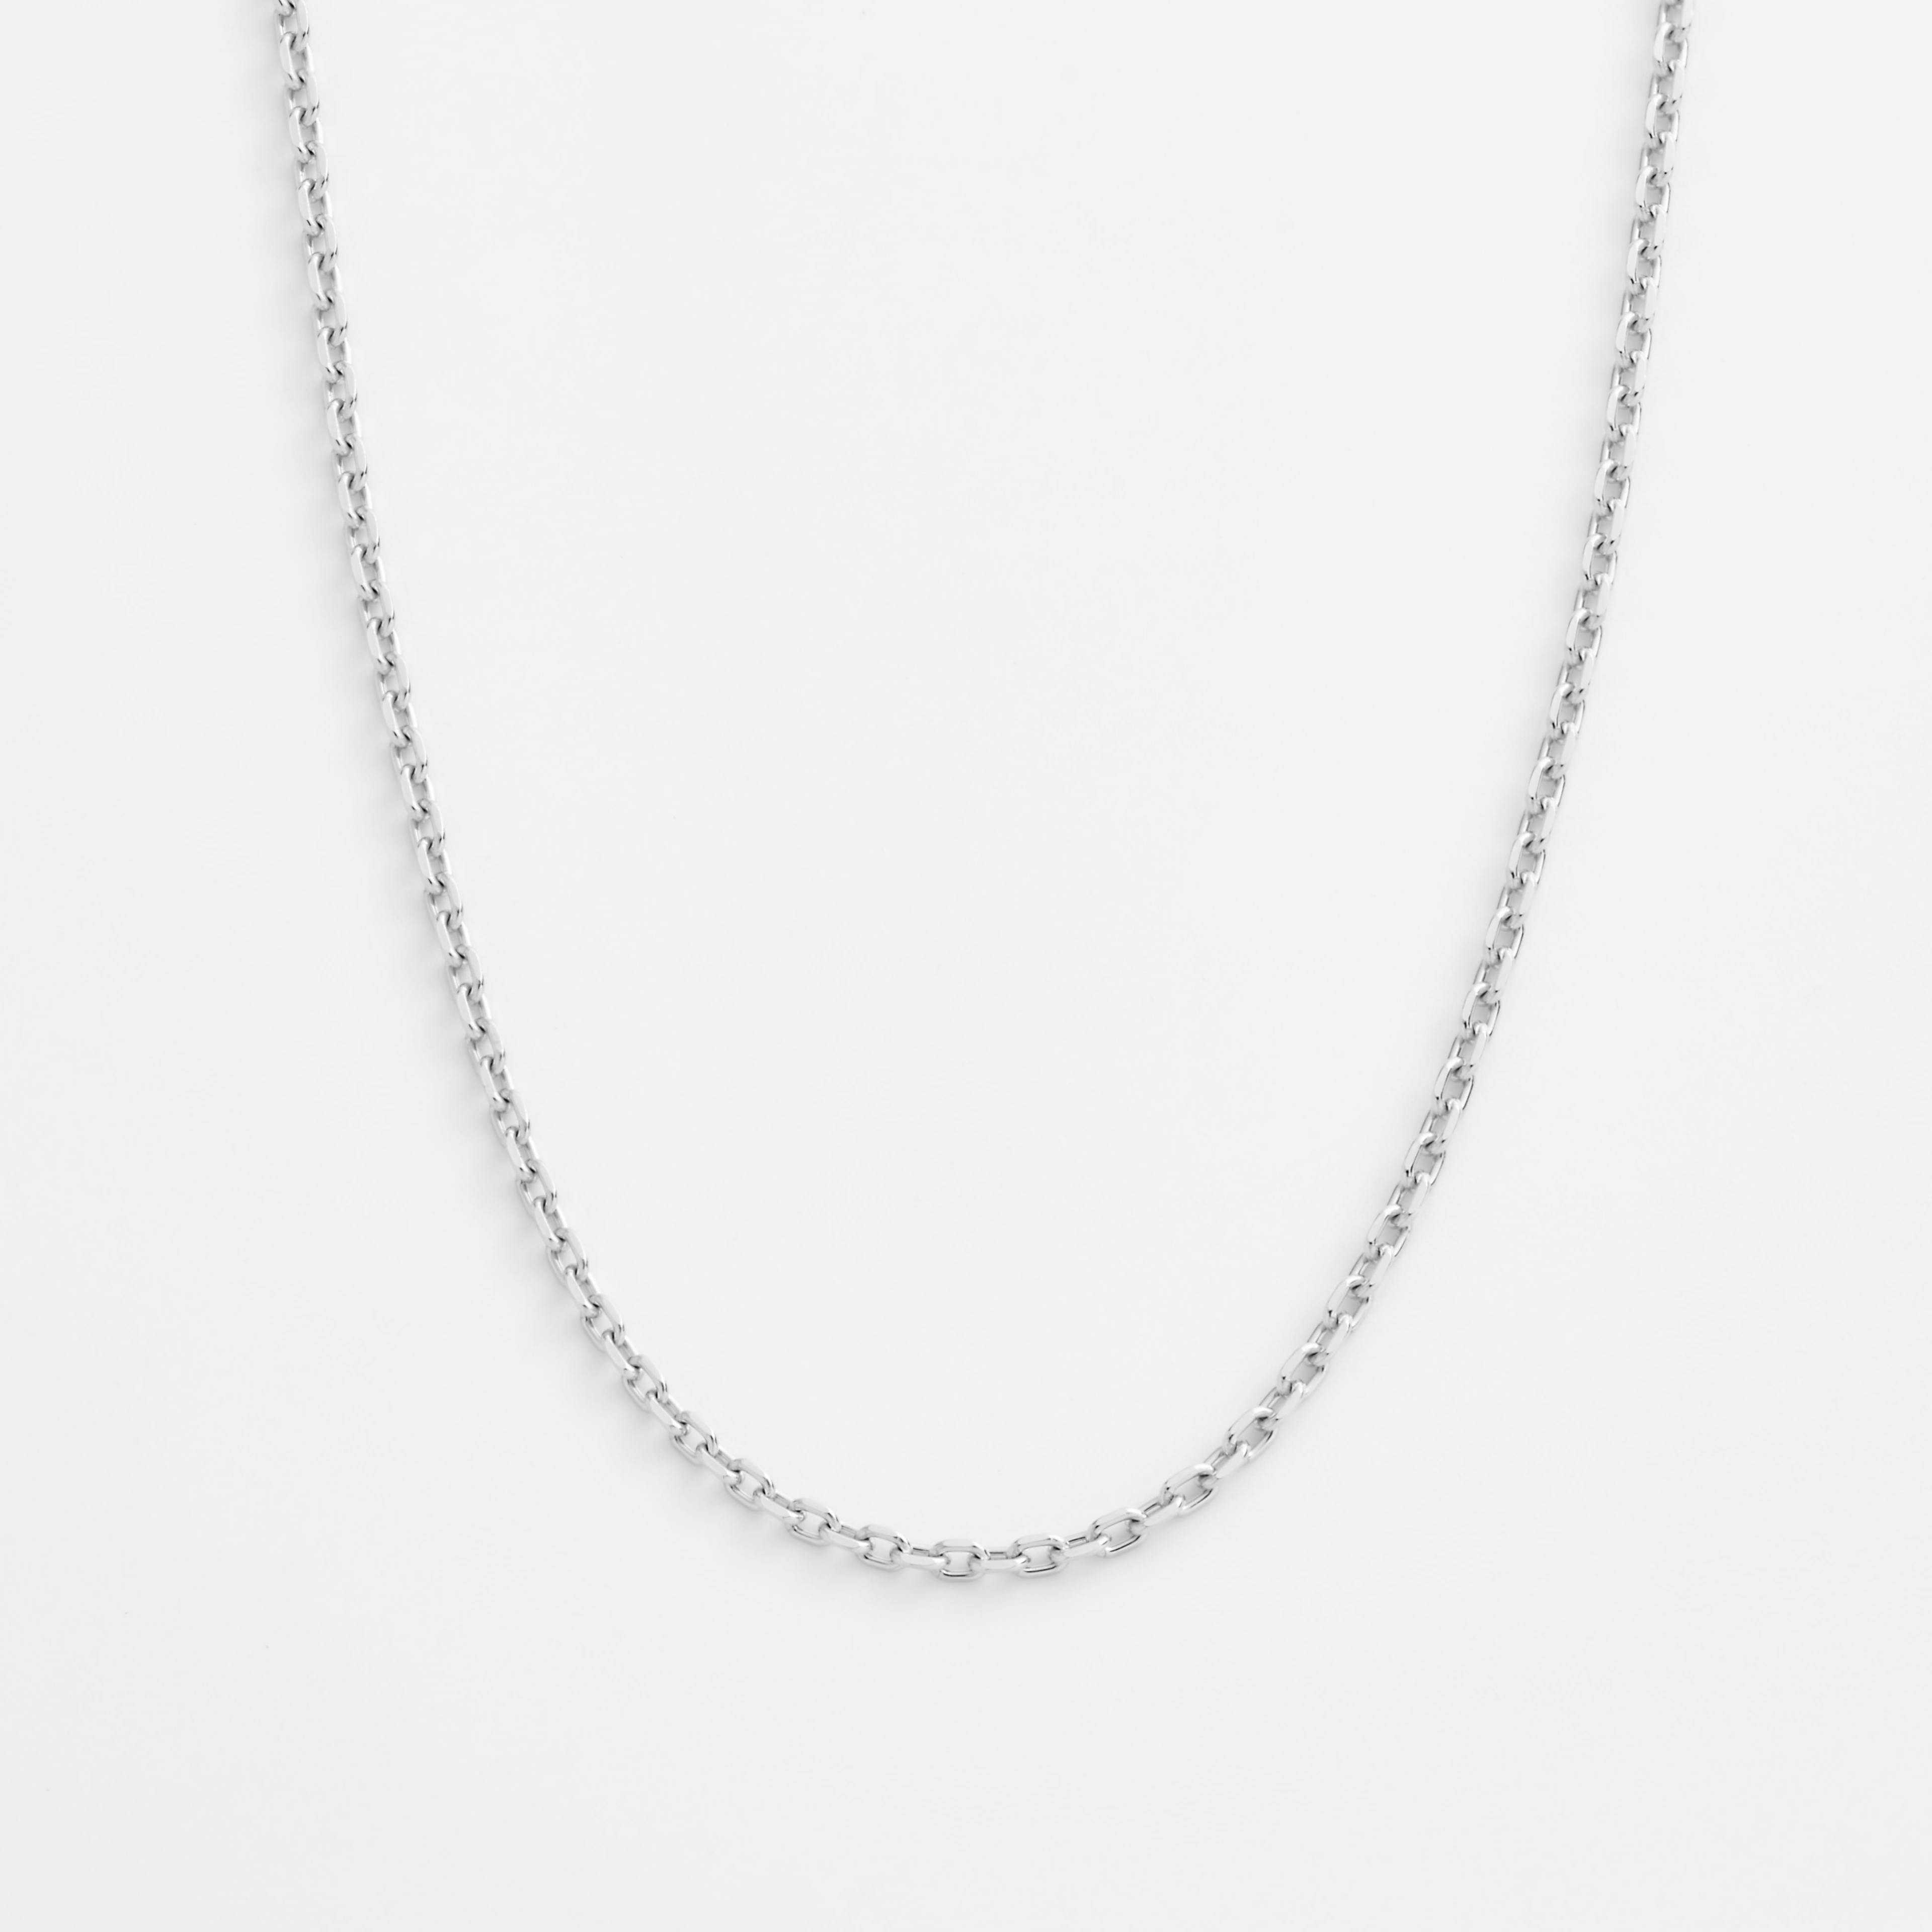 Shop platinum Necklaces Wide Diamond Cut Cable Chain Necklace